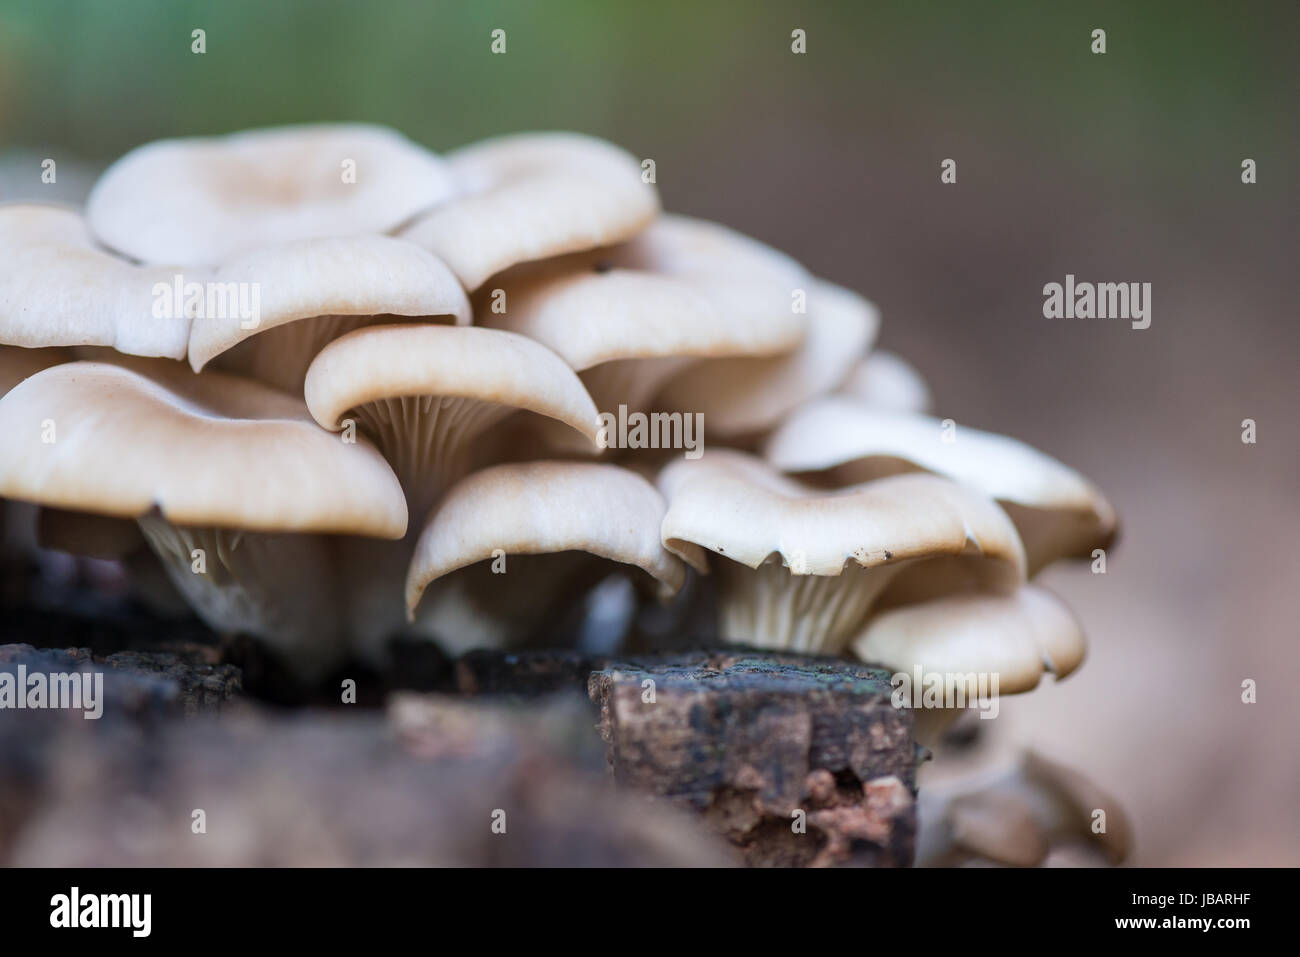 Un grappolo di funghi ostrici (Pleurotus ostreatus) color crema, beige e bianchissimi, che crescono su un ceppo di pioppo in decomposizione. Foto Stock